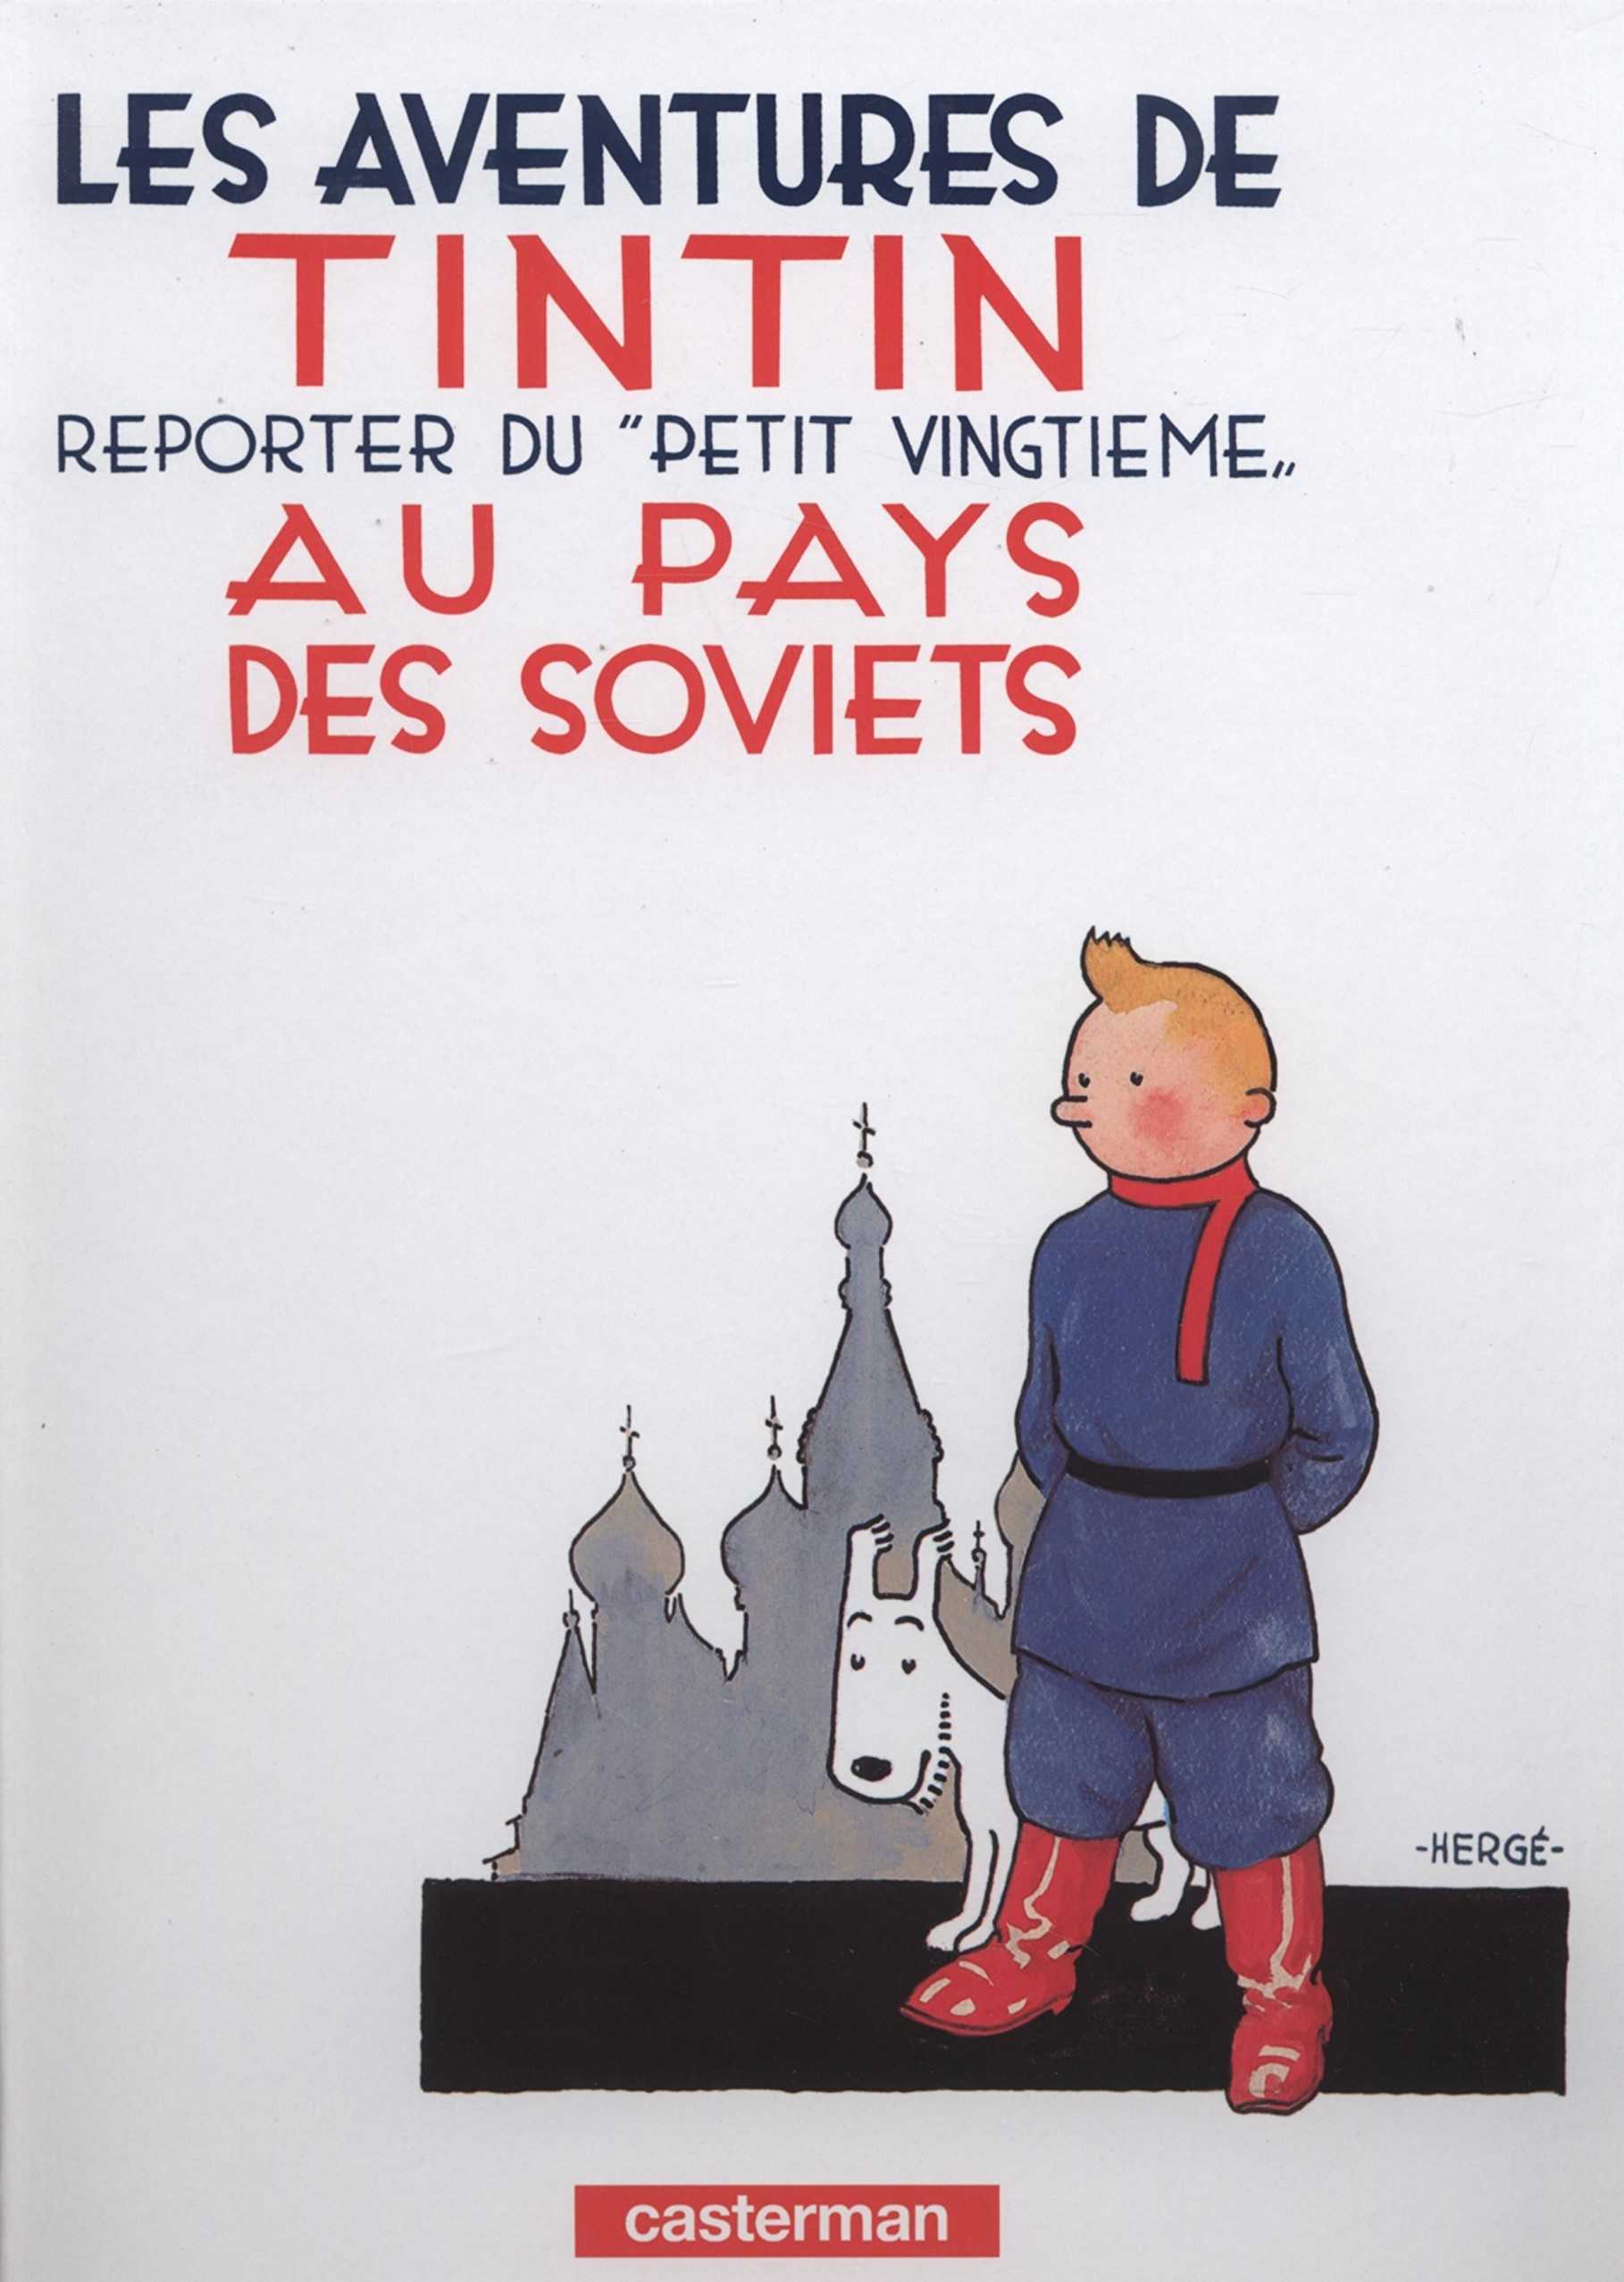 Tintin, c'est l'aventure-Un monde sans frontières - Accueil